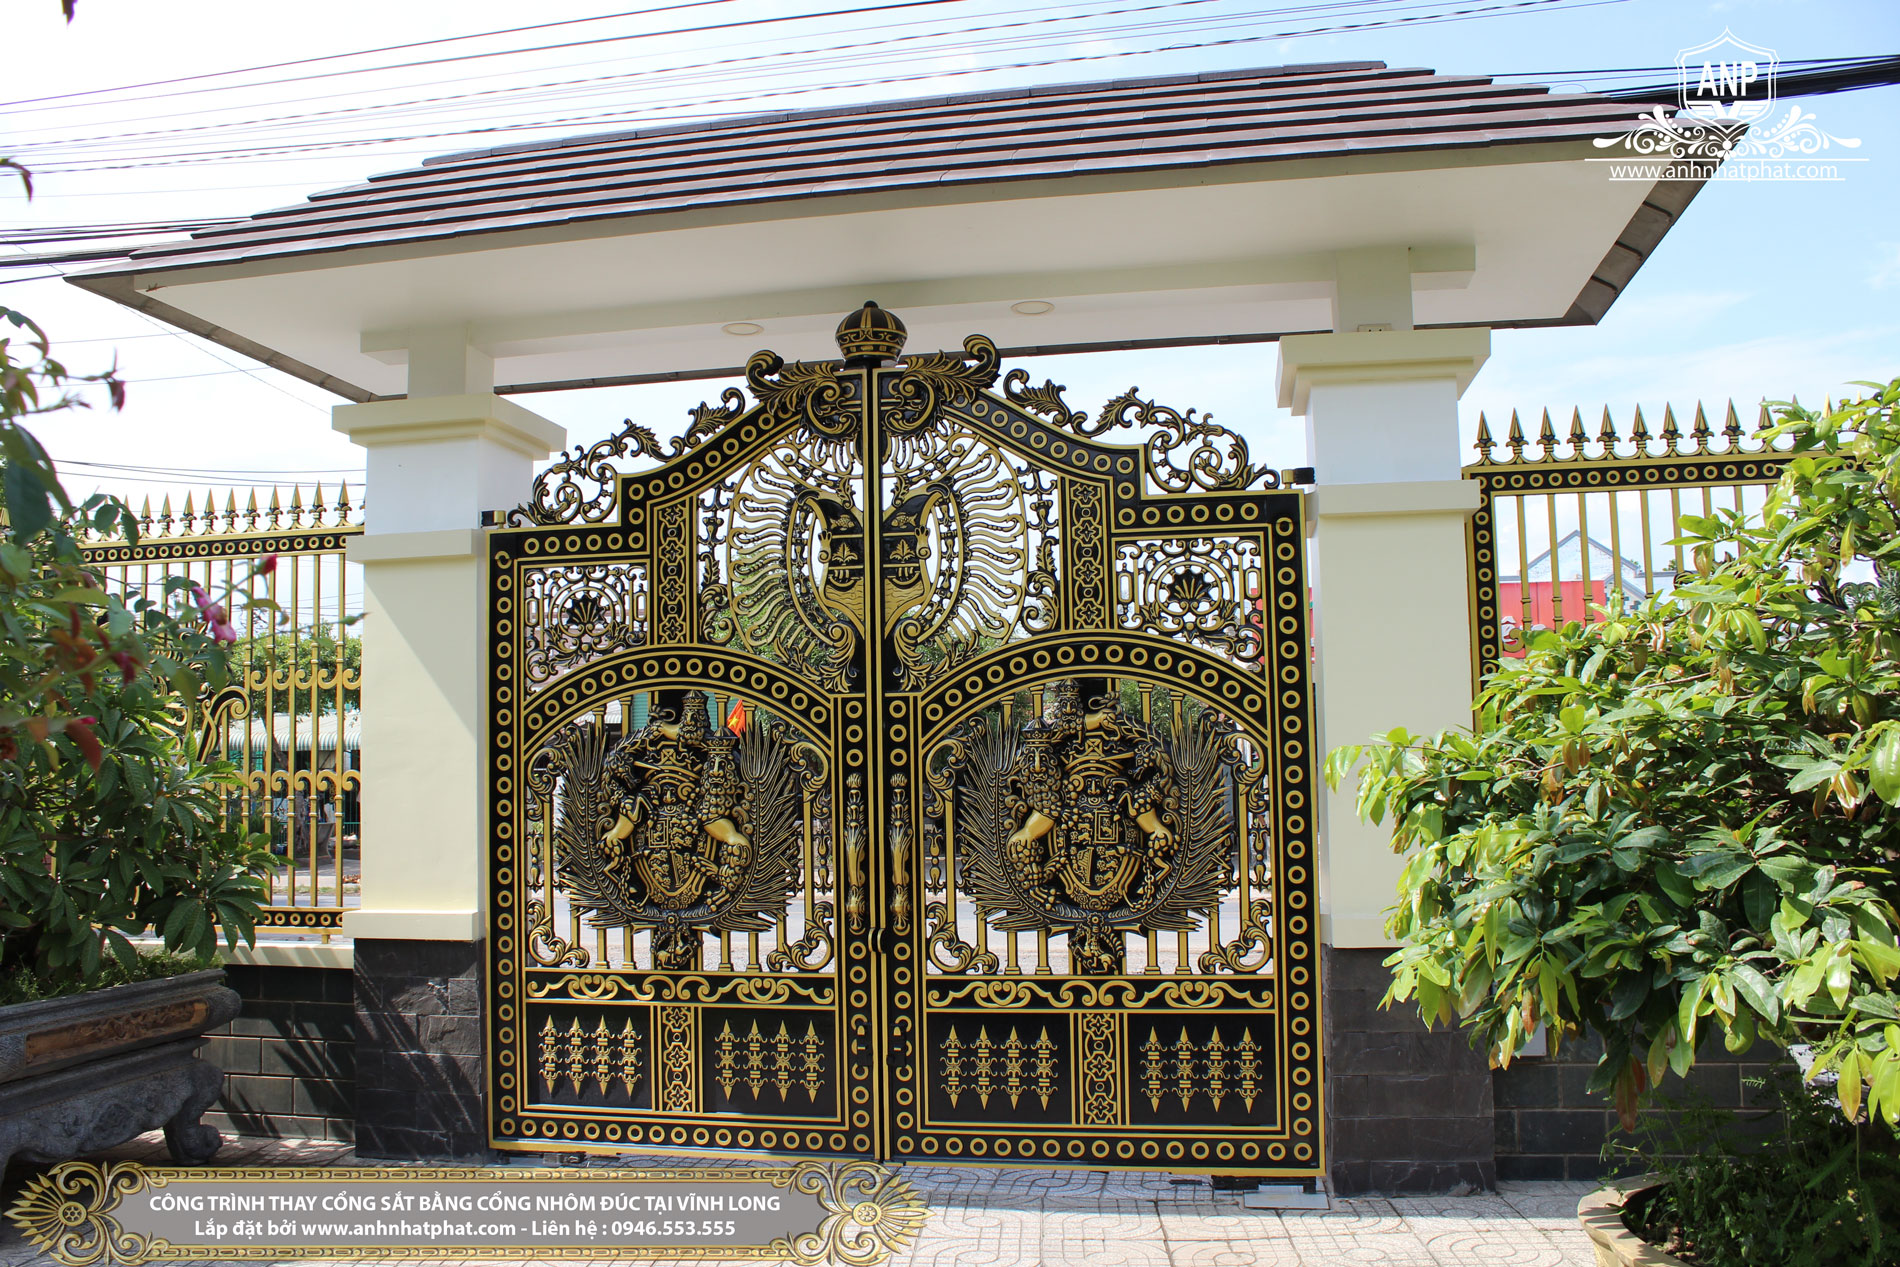 Mẫu biệt thự 2 tầng nhà vườn 11x19m kiểu cổ điển Pháp đẹp từ cổng đến sau  nhà ở Đồng Nai